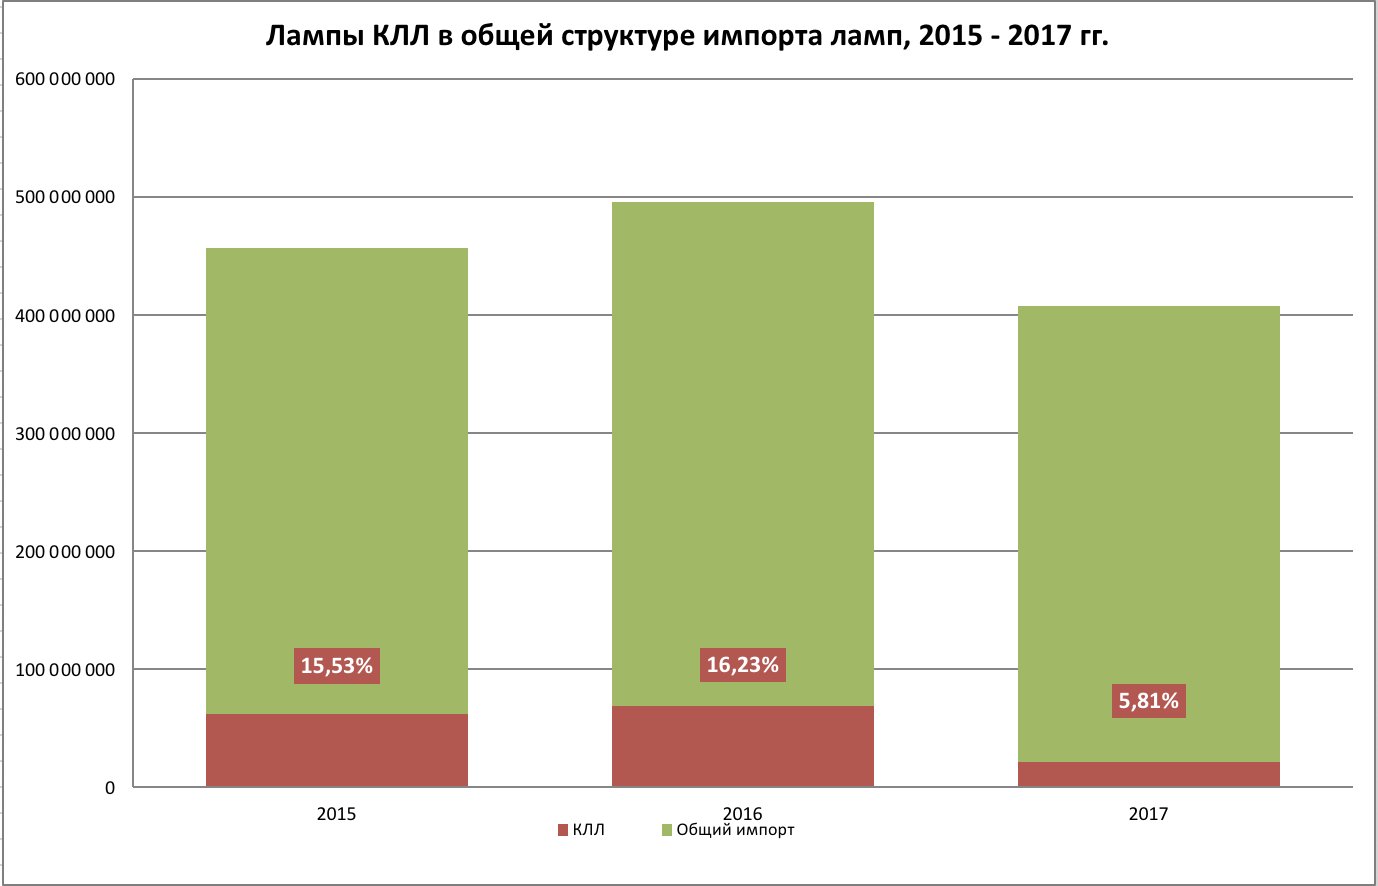 Изменение в объеме импорта КЛЛ за 2015 - 2017 годы